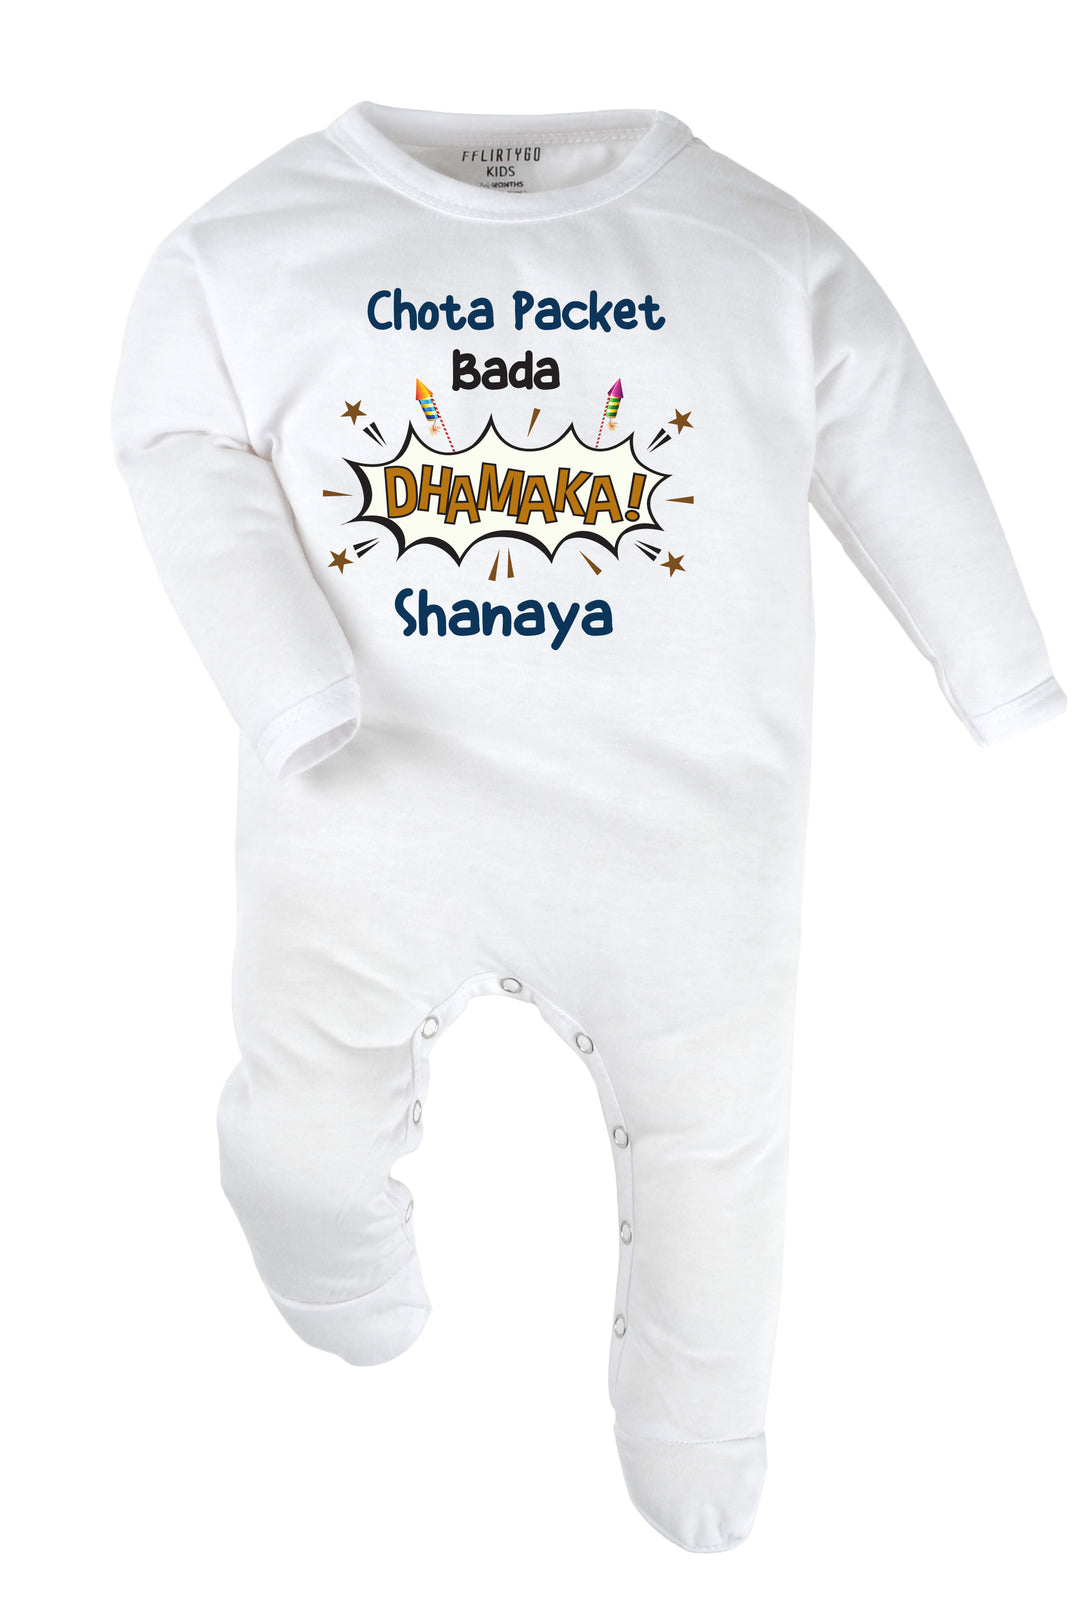 Chota Packet Bada Dhamaka! Baby Romper | Onesies w/ Custom Name